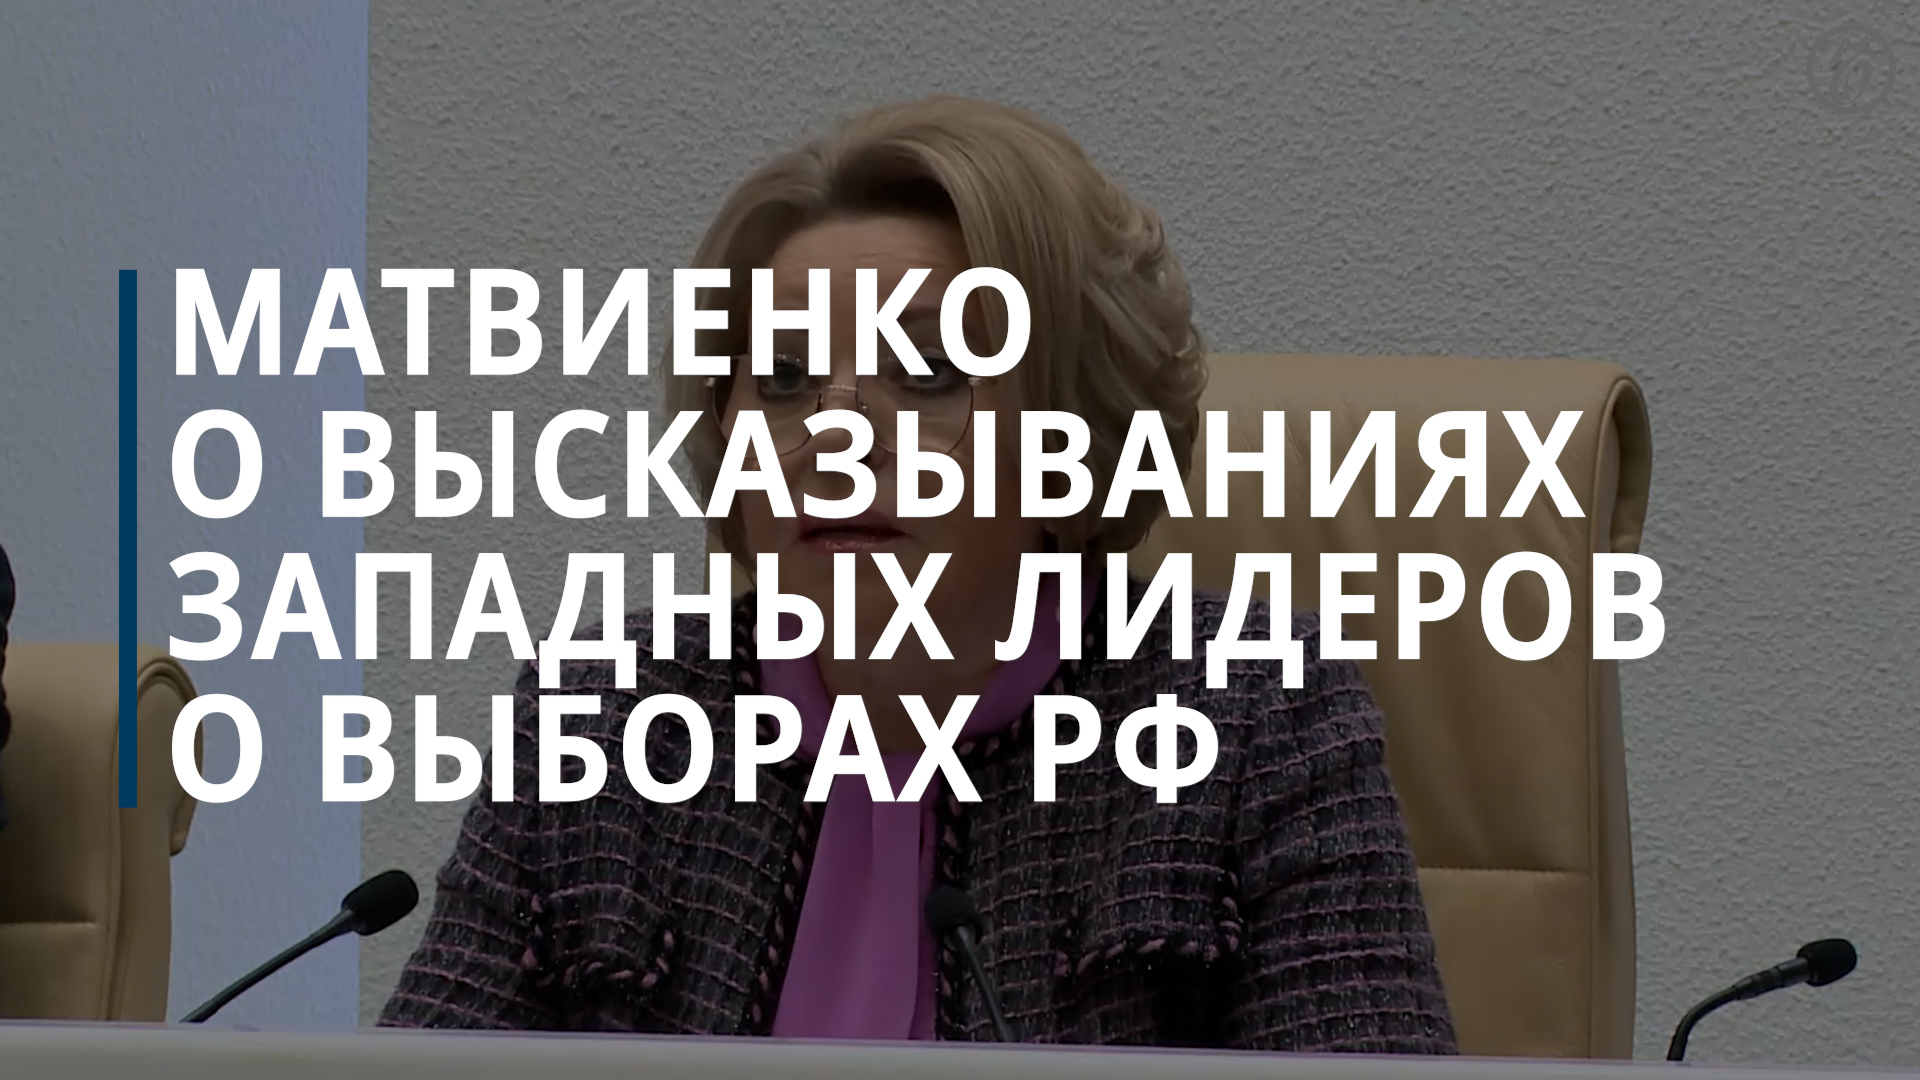 Матвиенко назвала оскорблением россиян слова западных лидеров о выборах в РФ